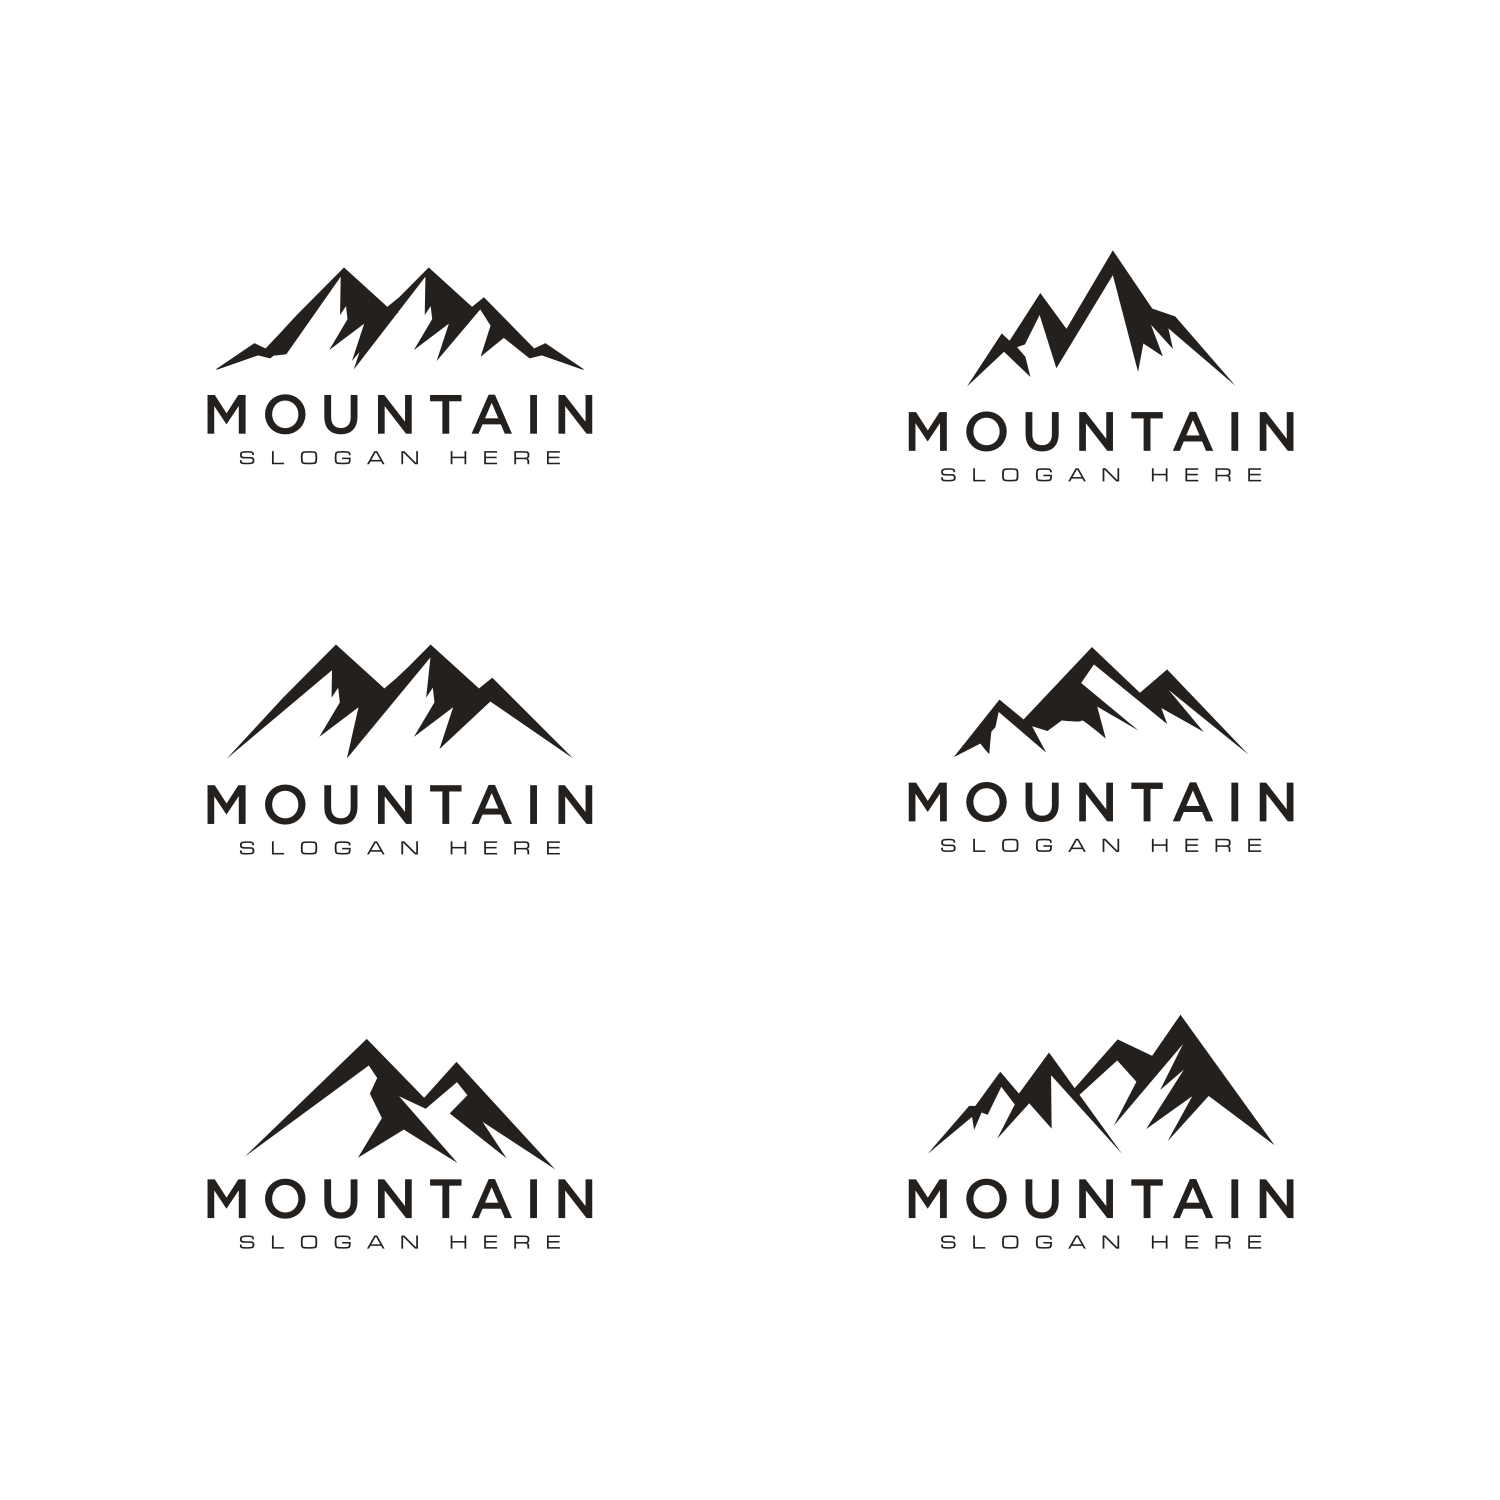 Logo Mountain Set Design cover image.